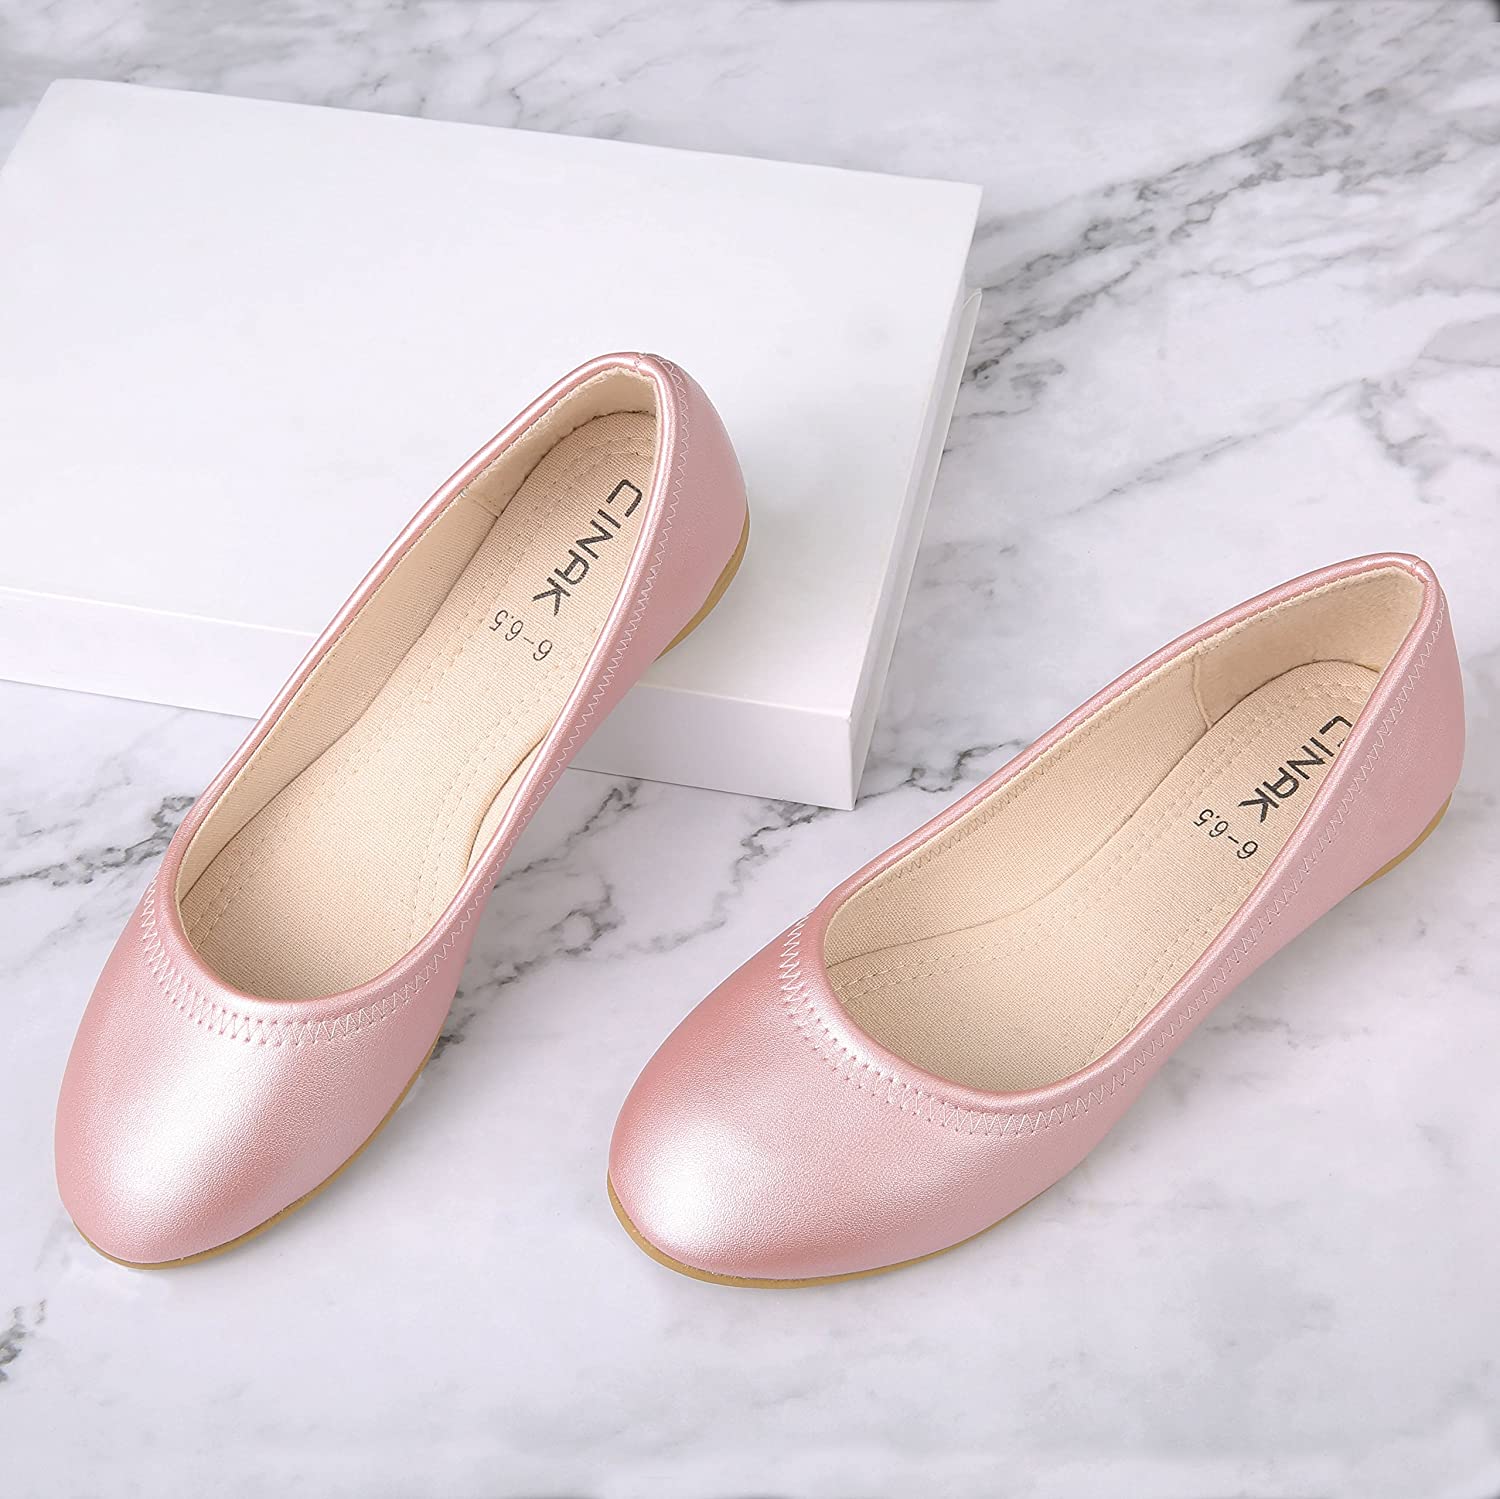 CINAK Flats Shoes Women- Slip-on Ballet Comfort Walking Classic, Pink ...